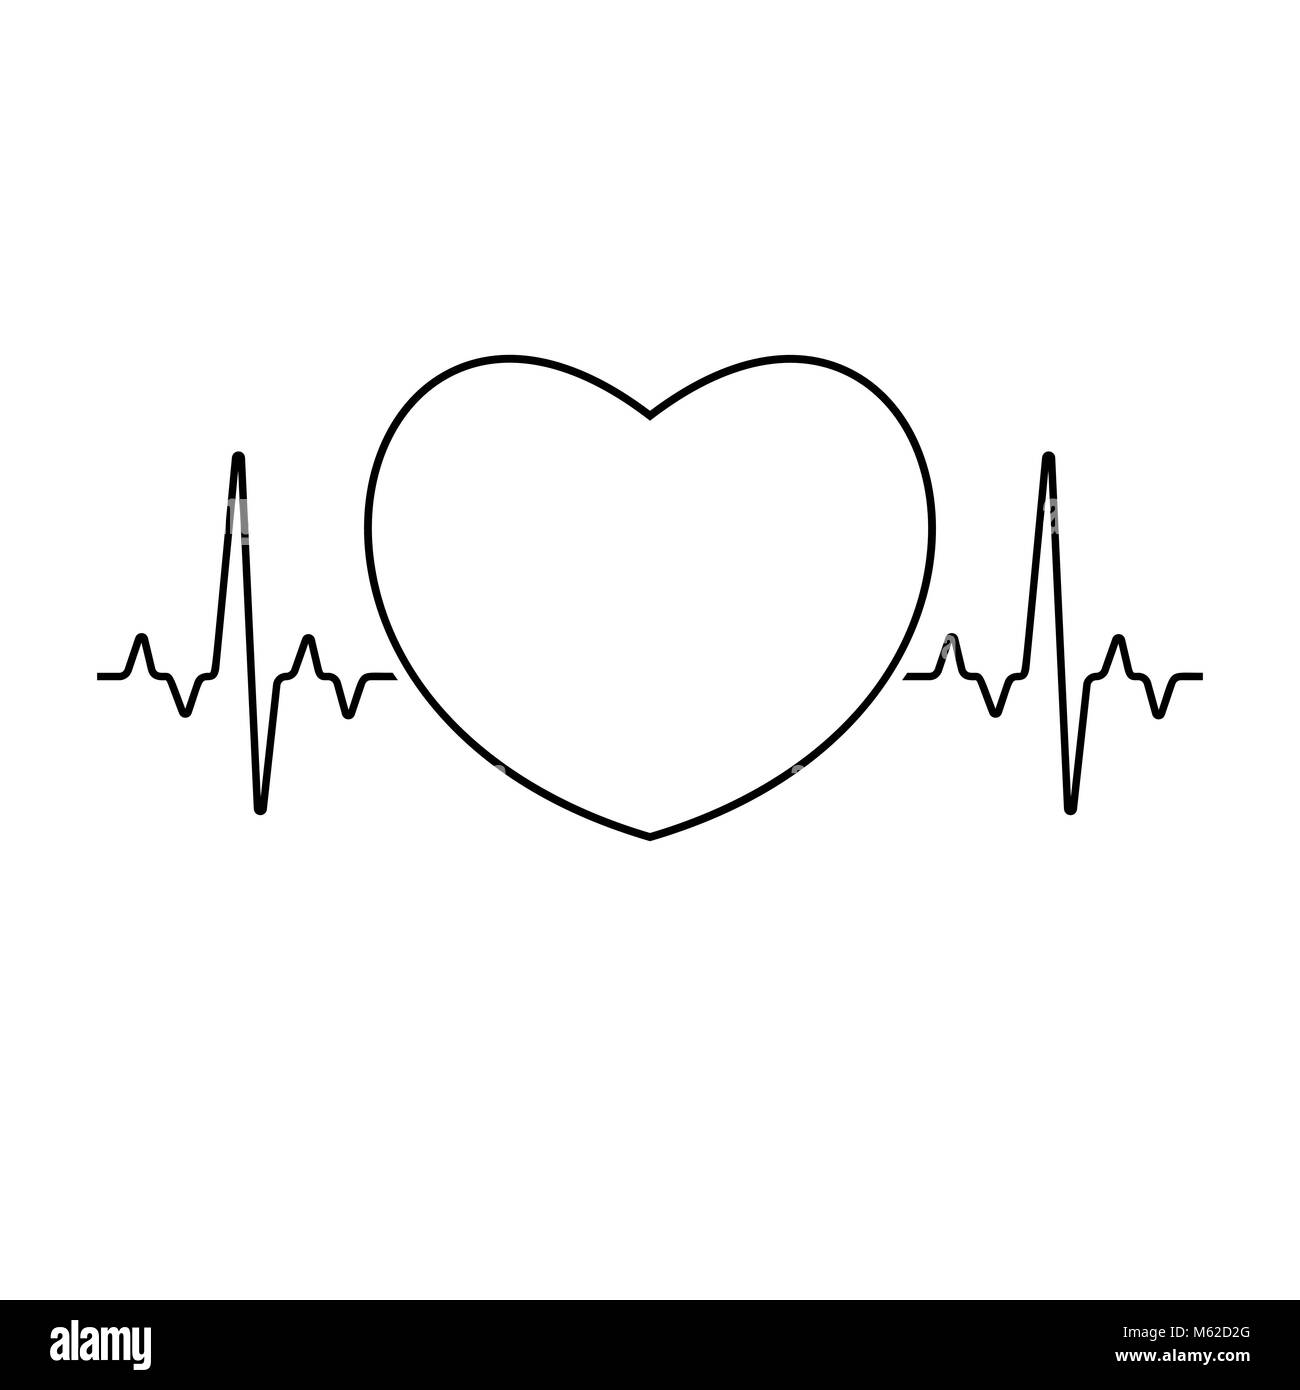 Die Pulsfrequenz Mit Herz Zeichen Innen Medizinische Illustration Stock Vektorgrafik Alamy